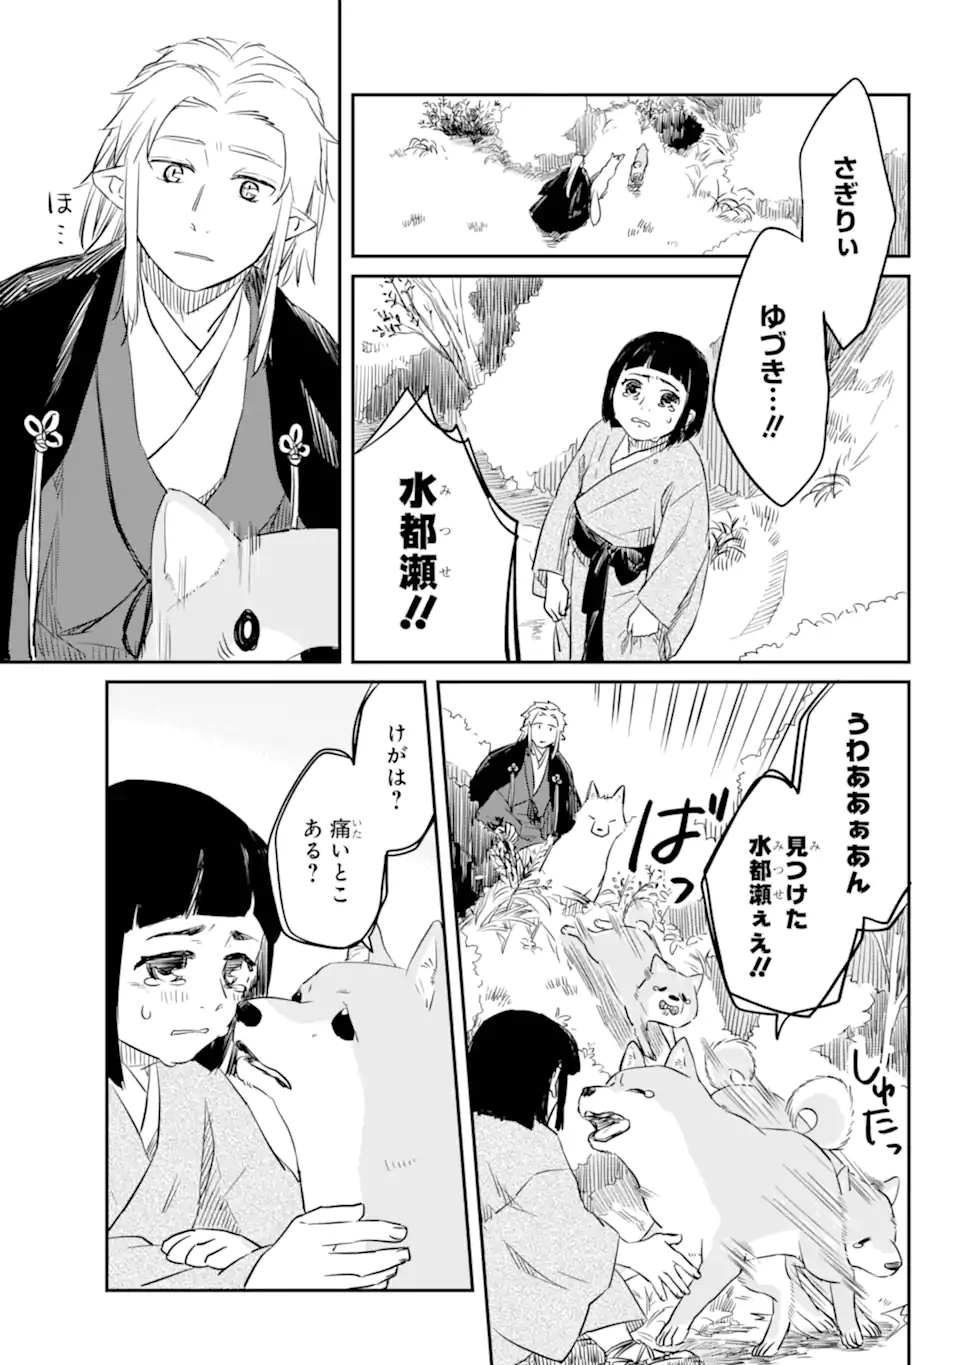 Ryuujin no Musume - Chapter 3.7 - Page 5